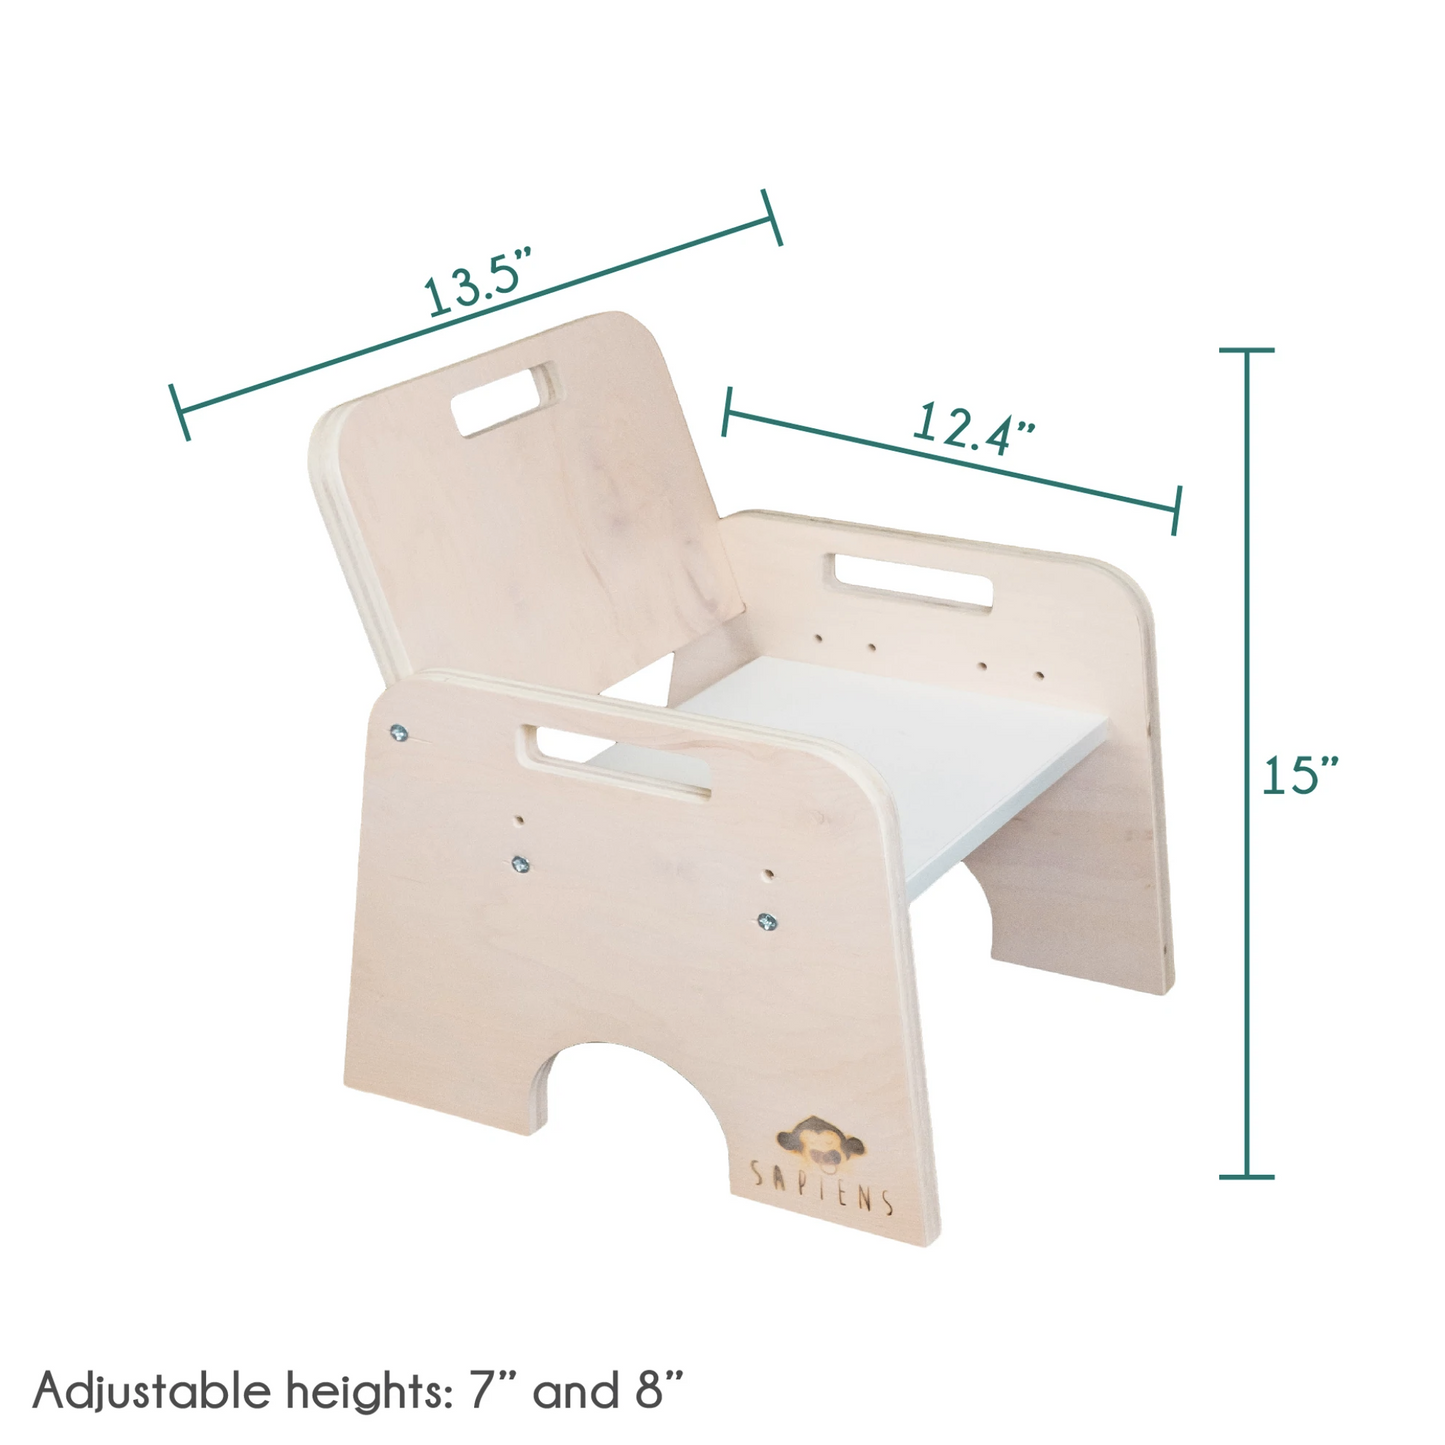 PAPAYA SET - Table and Chair Adjustable Height